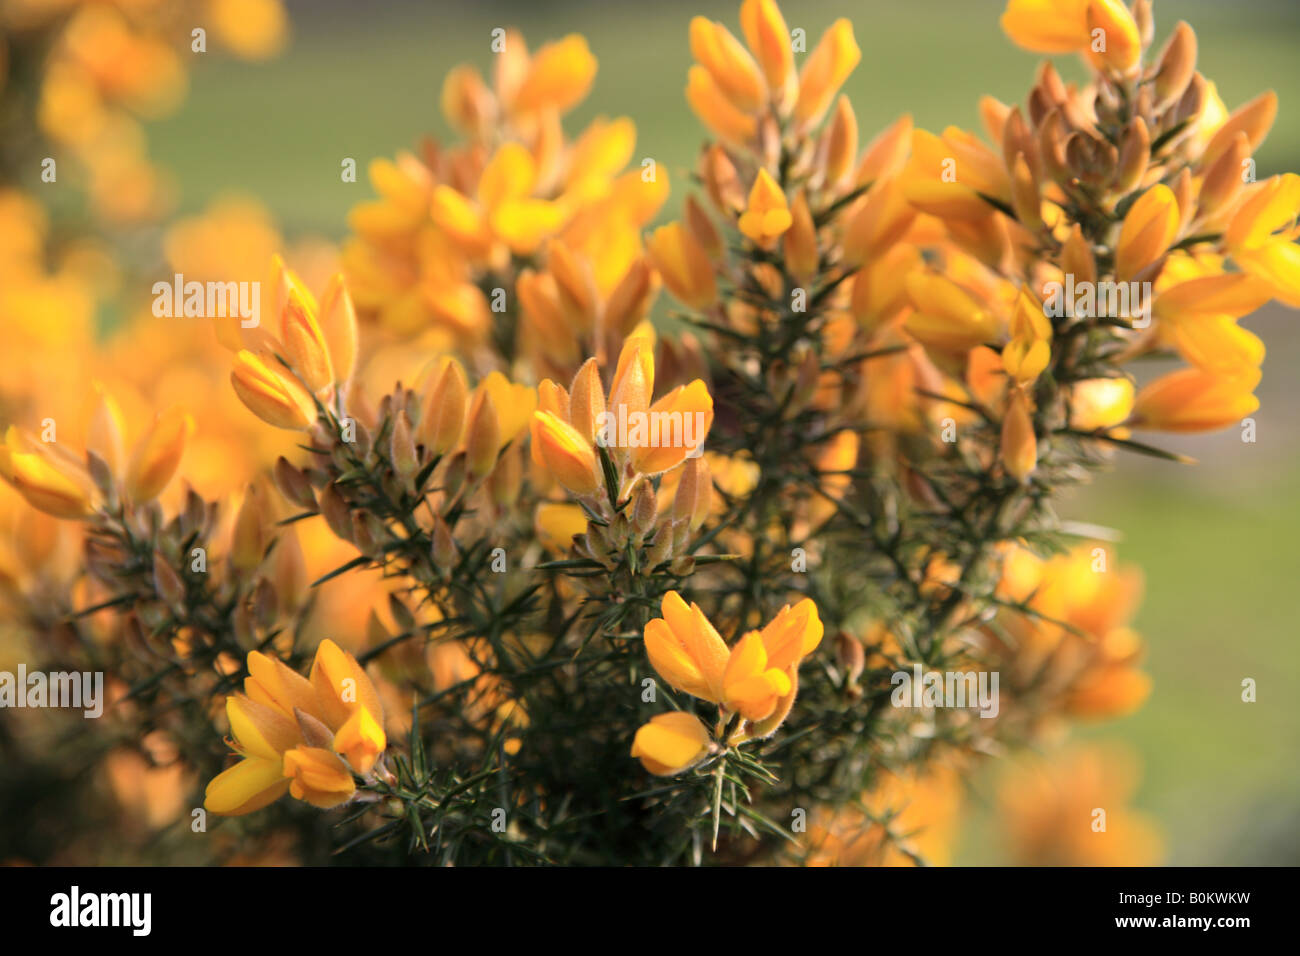 Gorse flowers, 'Ulex europaeus' Stock Photo